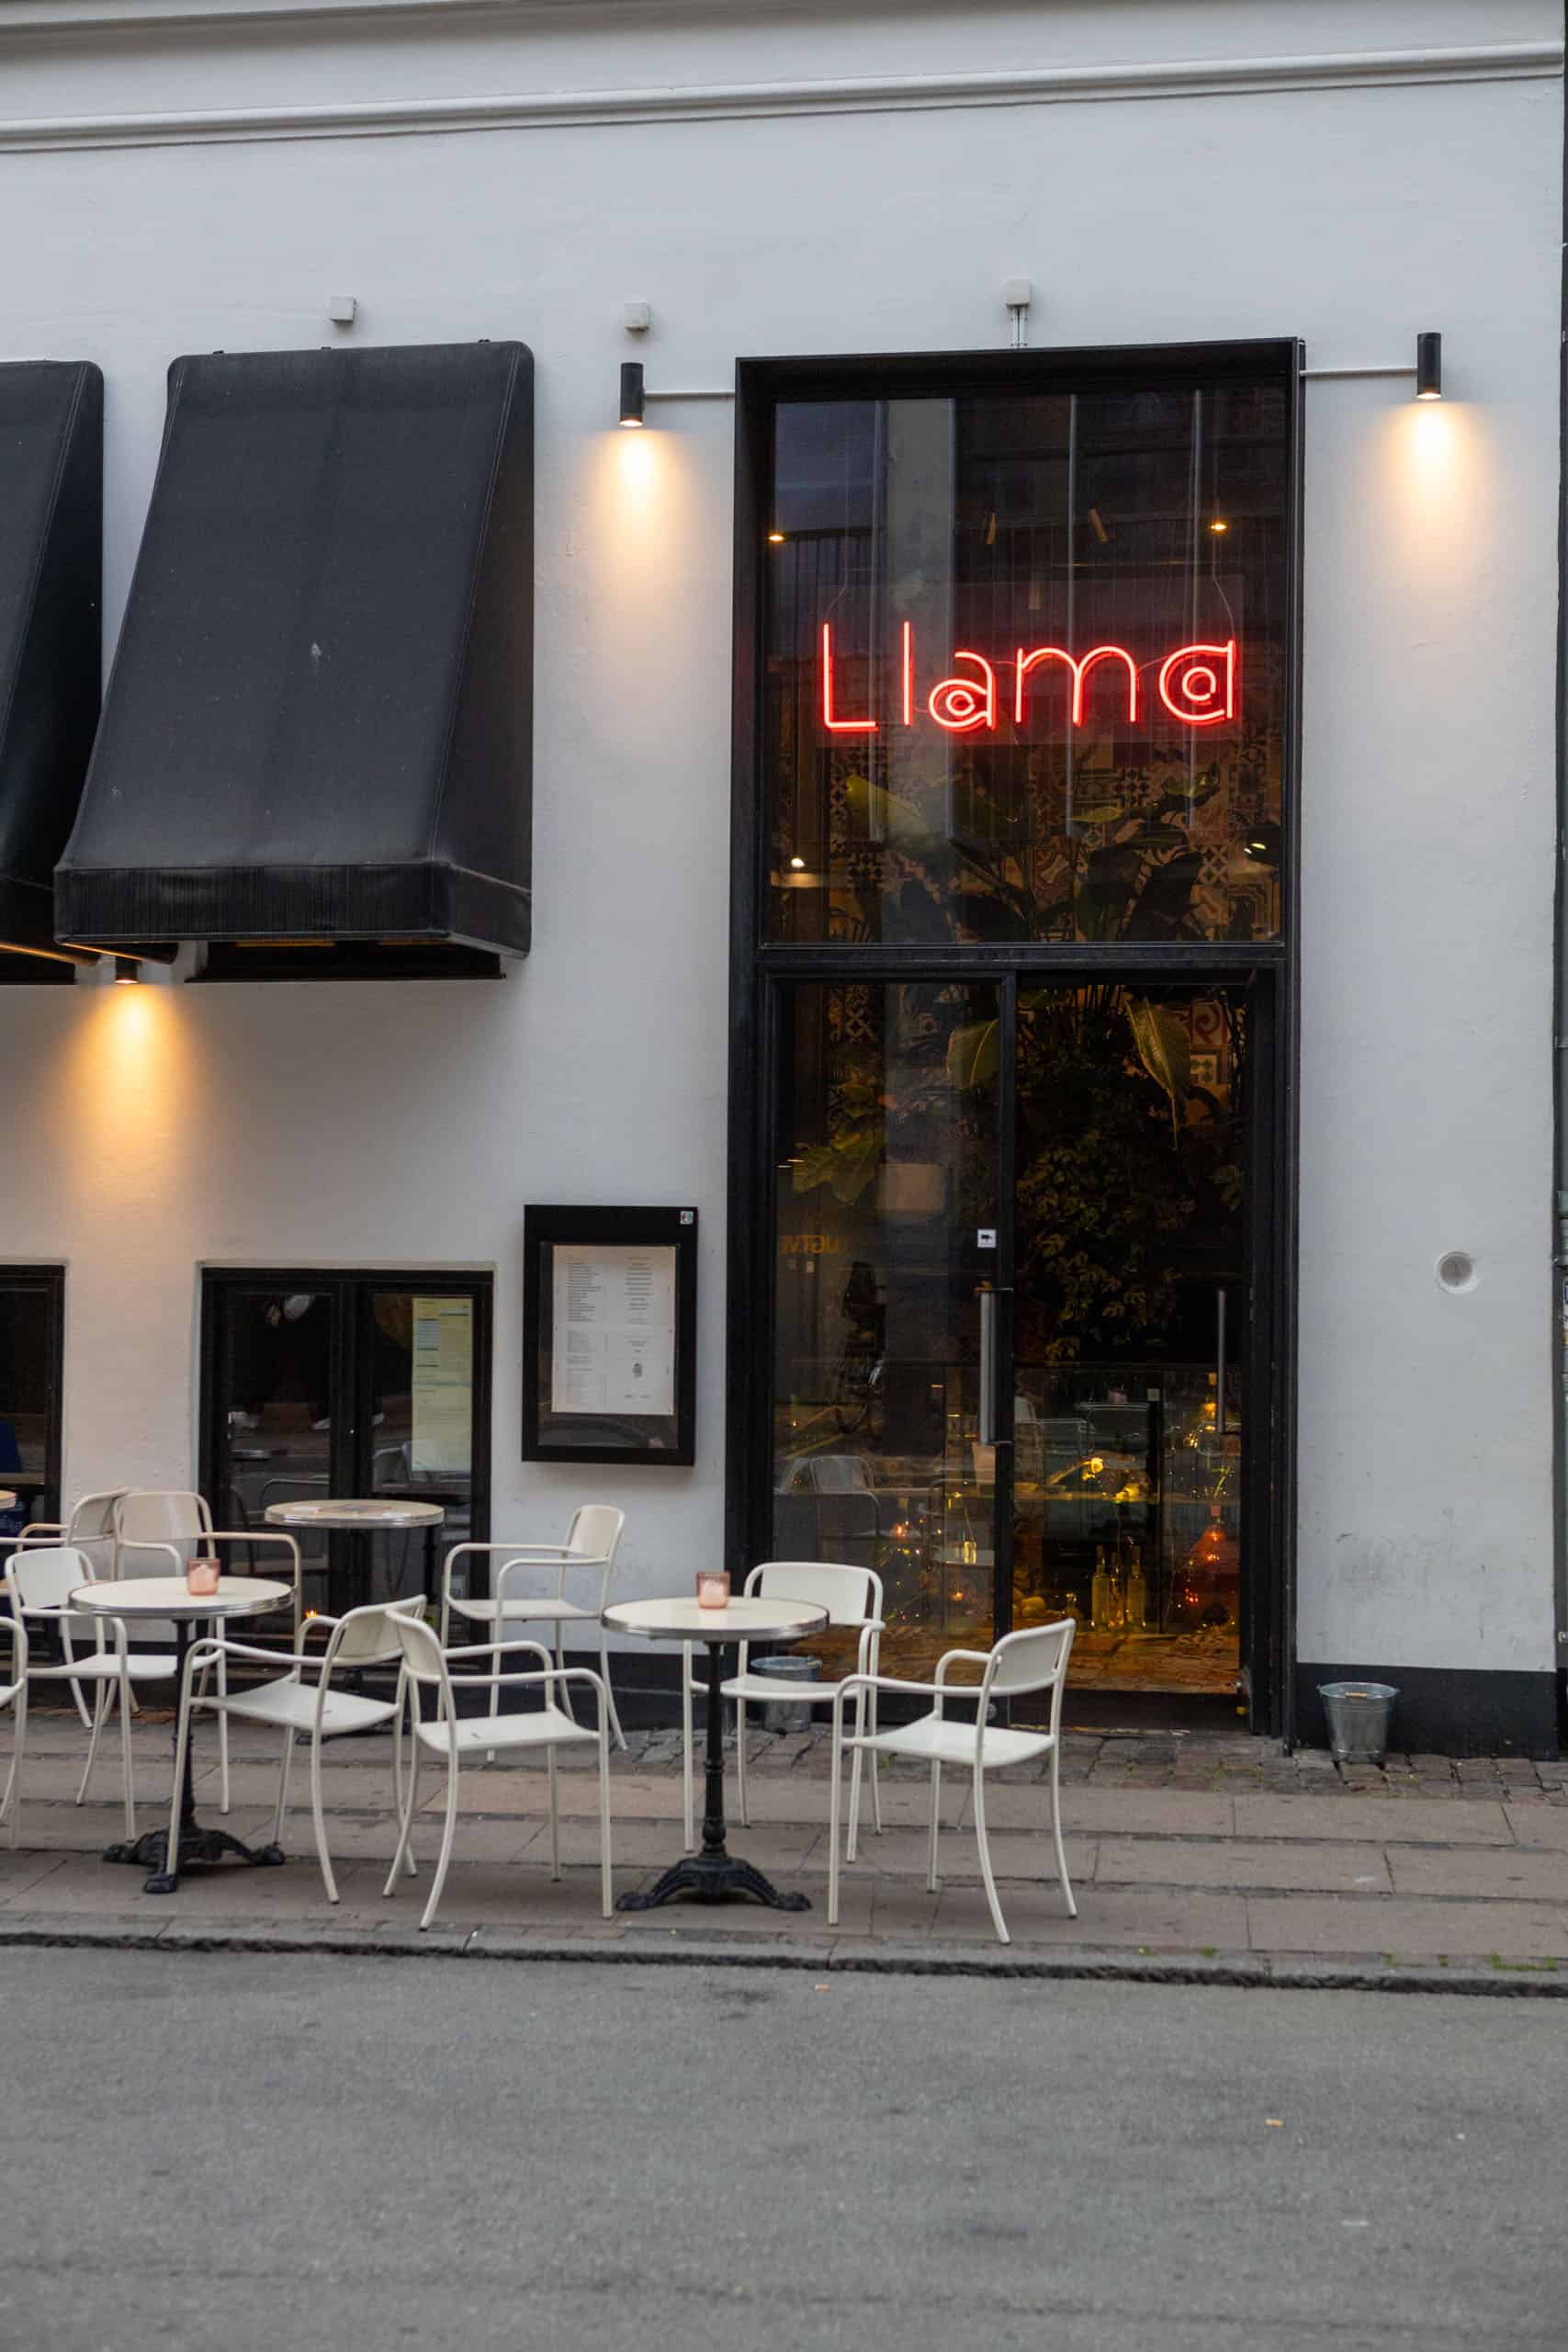 Voorzijde van restaurant Llama in Kopenhagen met witte muur, glazen deur en rode neonletters die Llama spellen